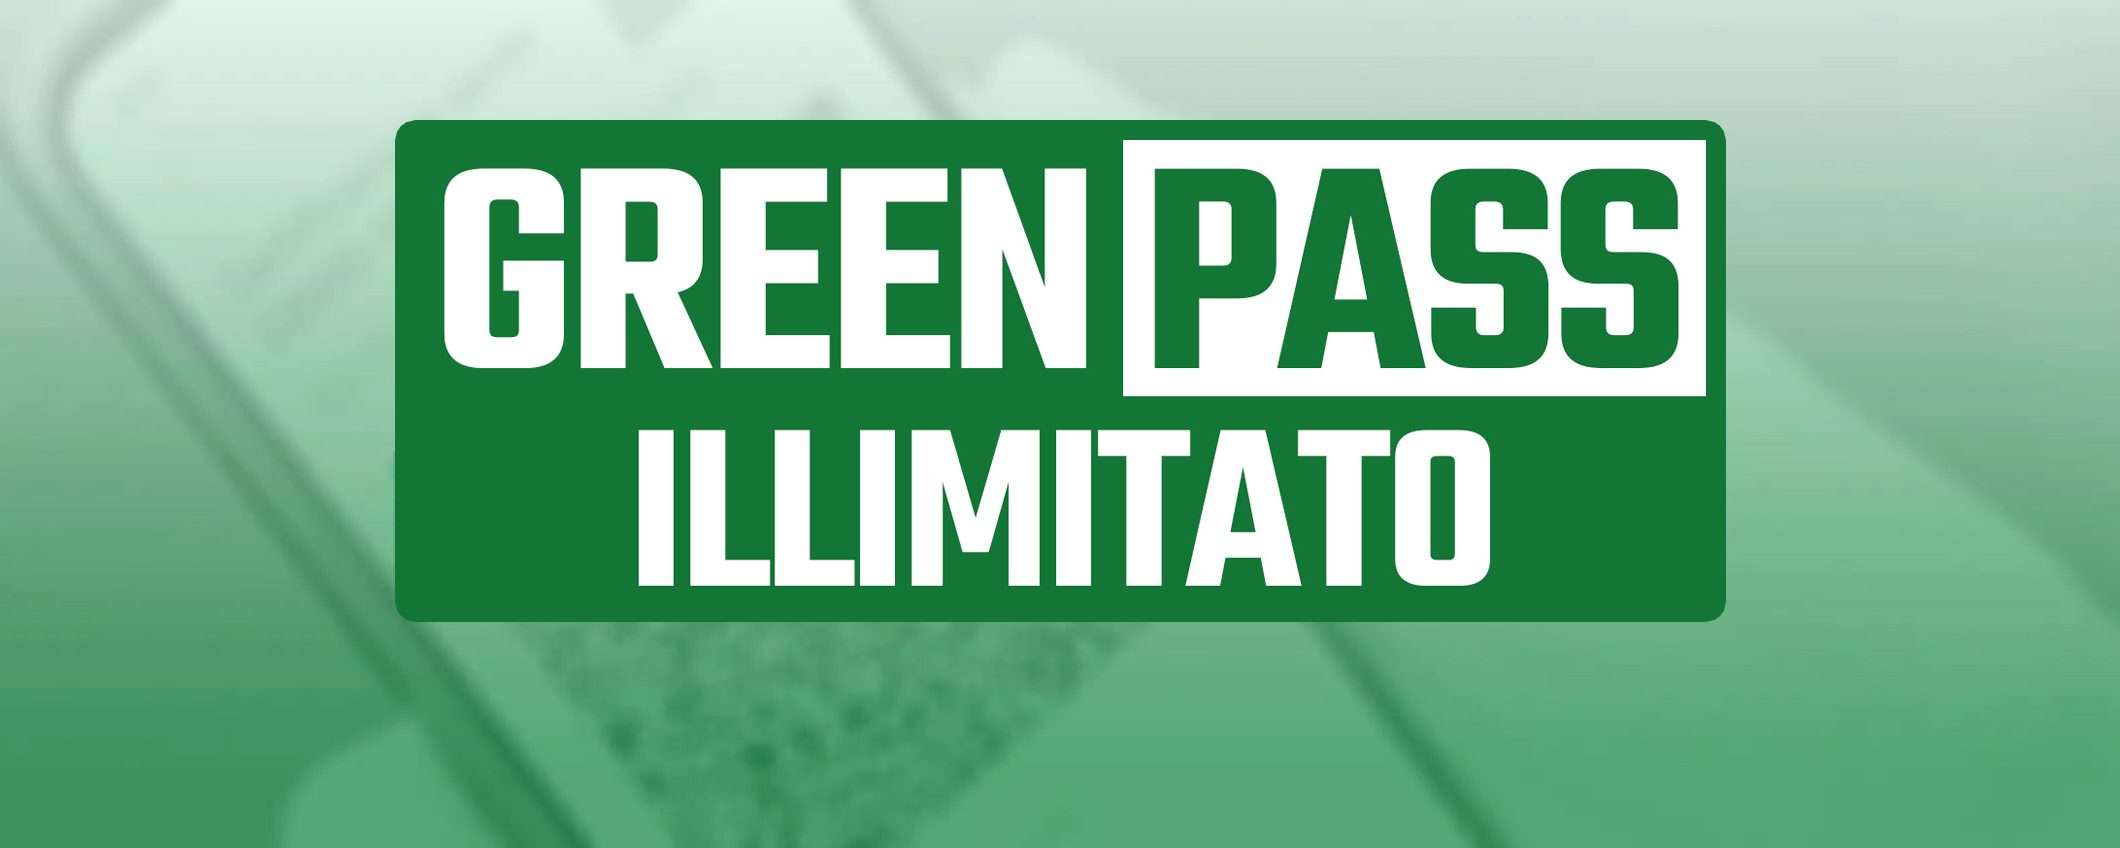 Green Pass illimitato: per chi e come funziona